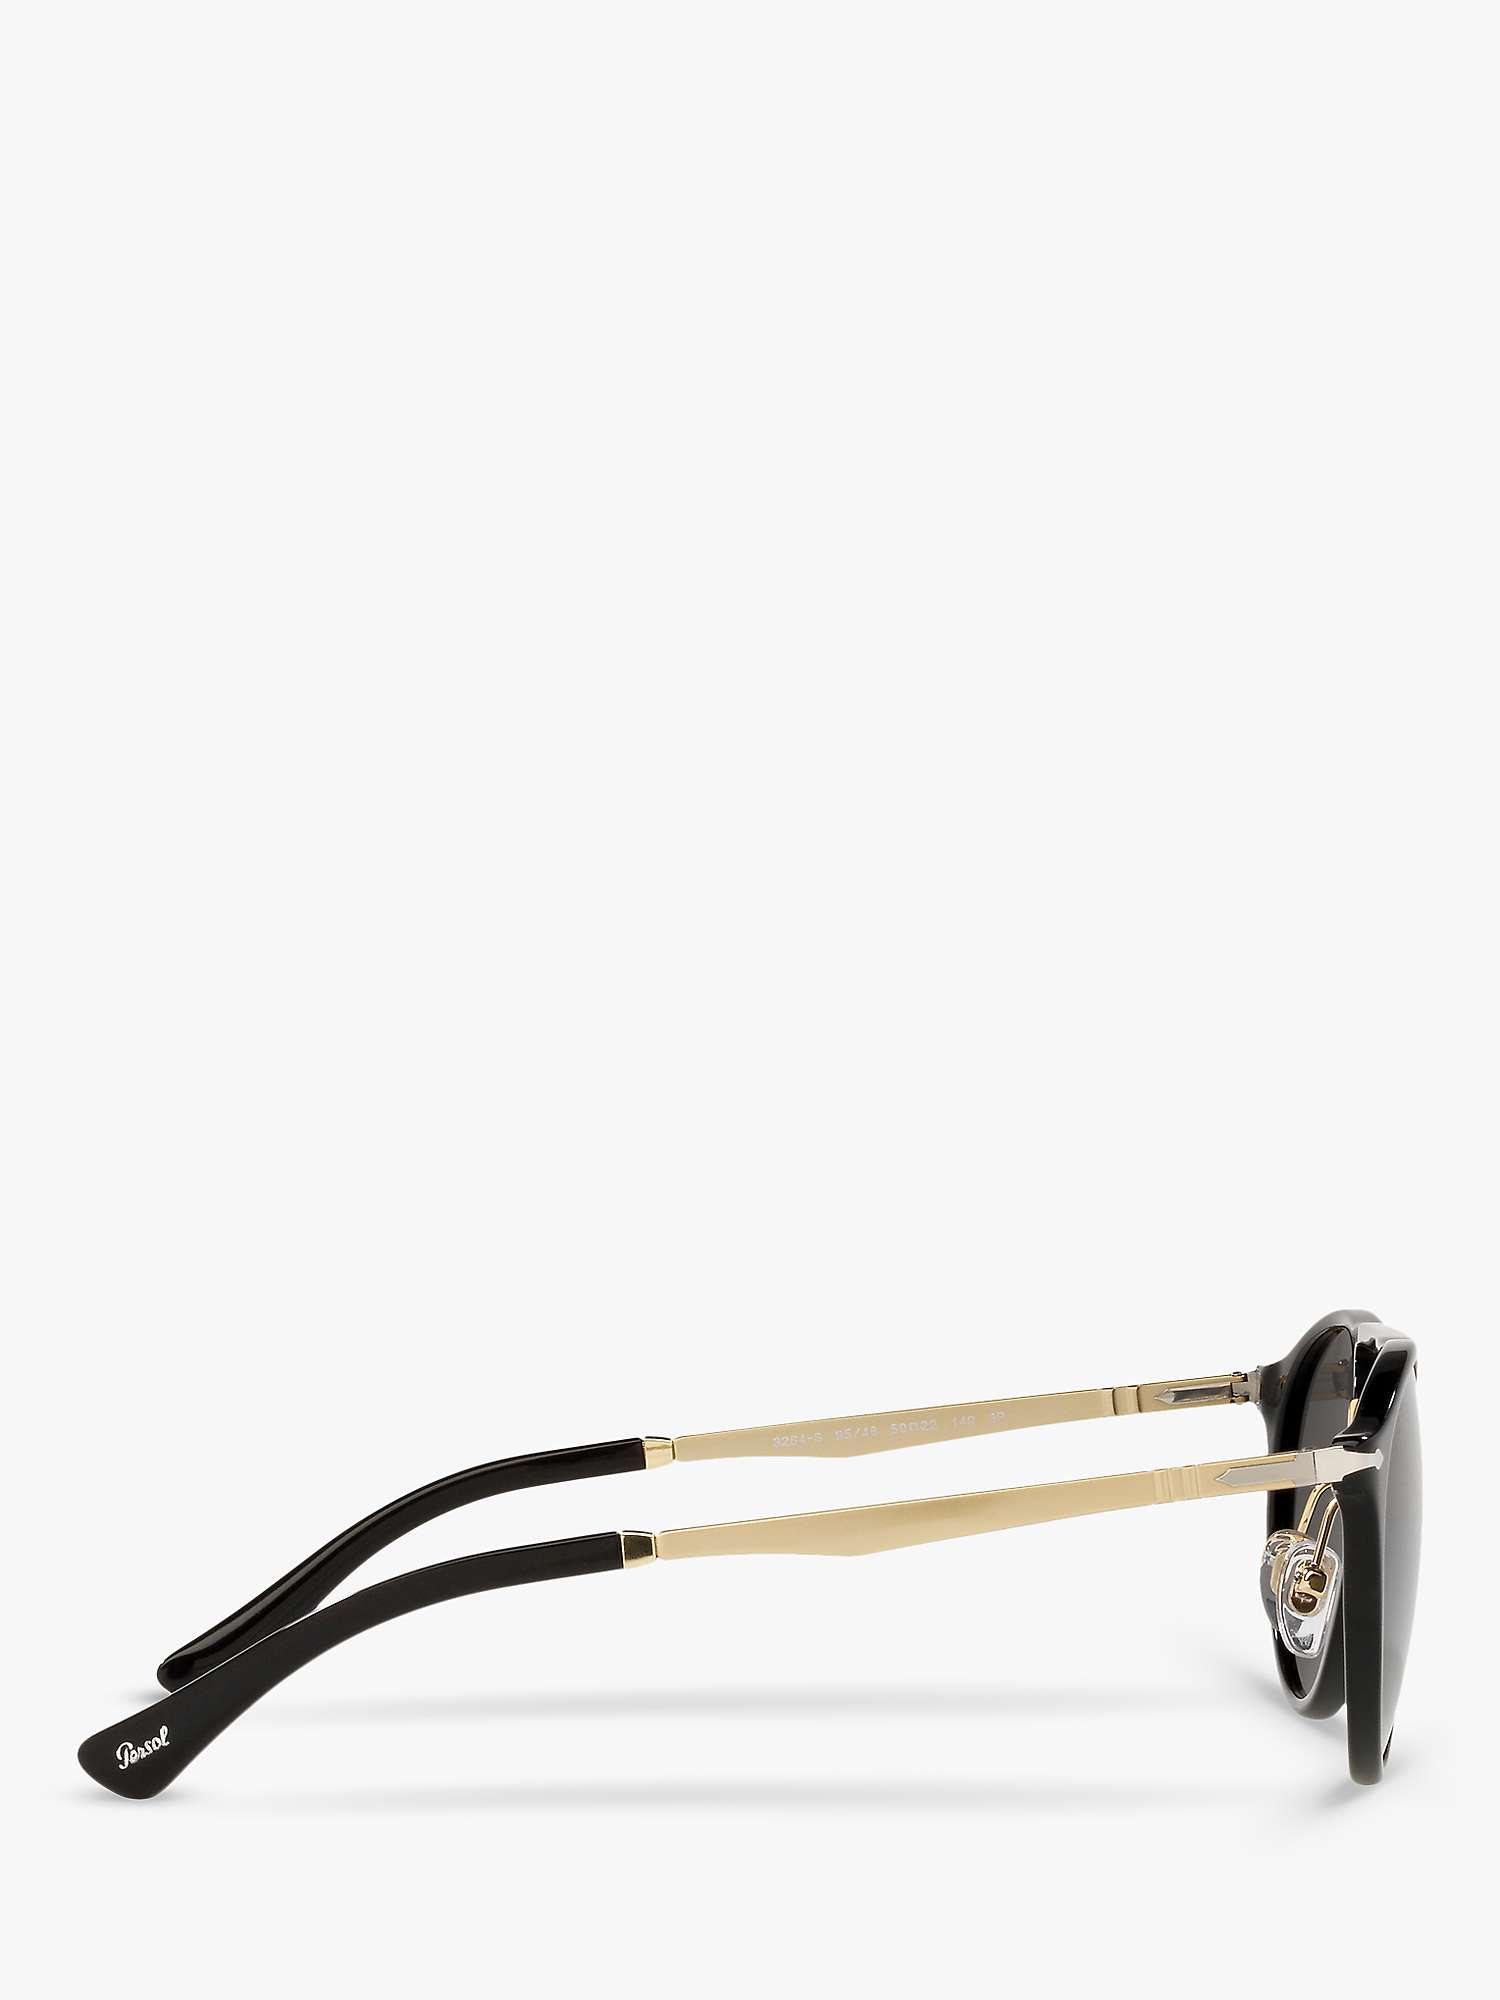 Buy Persol PO3264S Unisex Phantos Polarised Sunglasses, Black/Gold Online at johnlewis.com